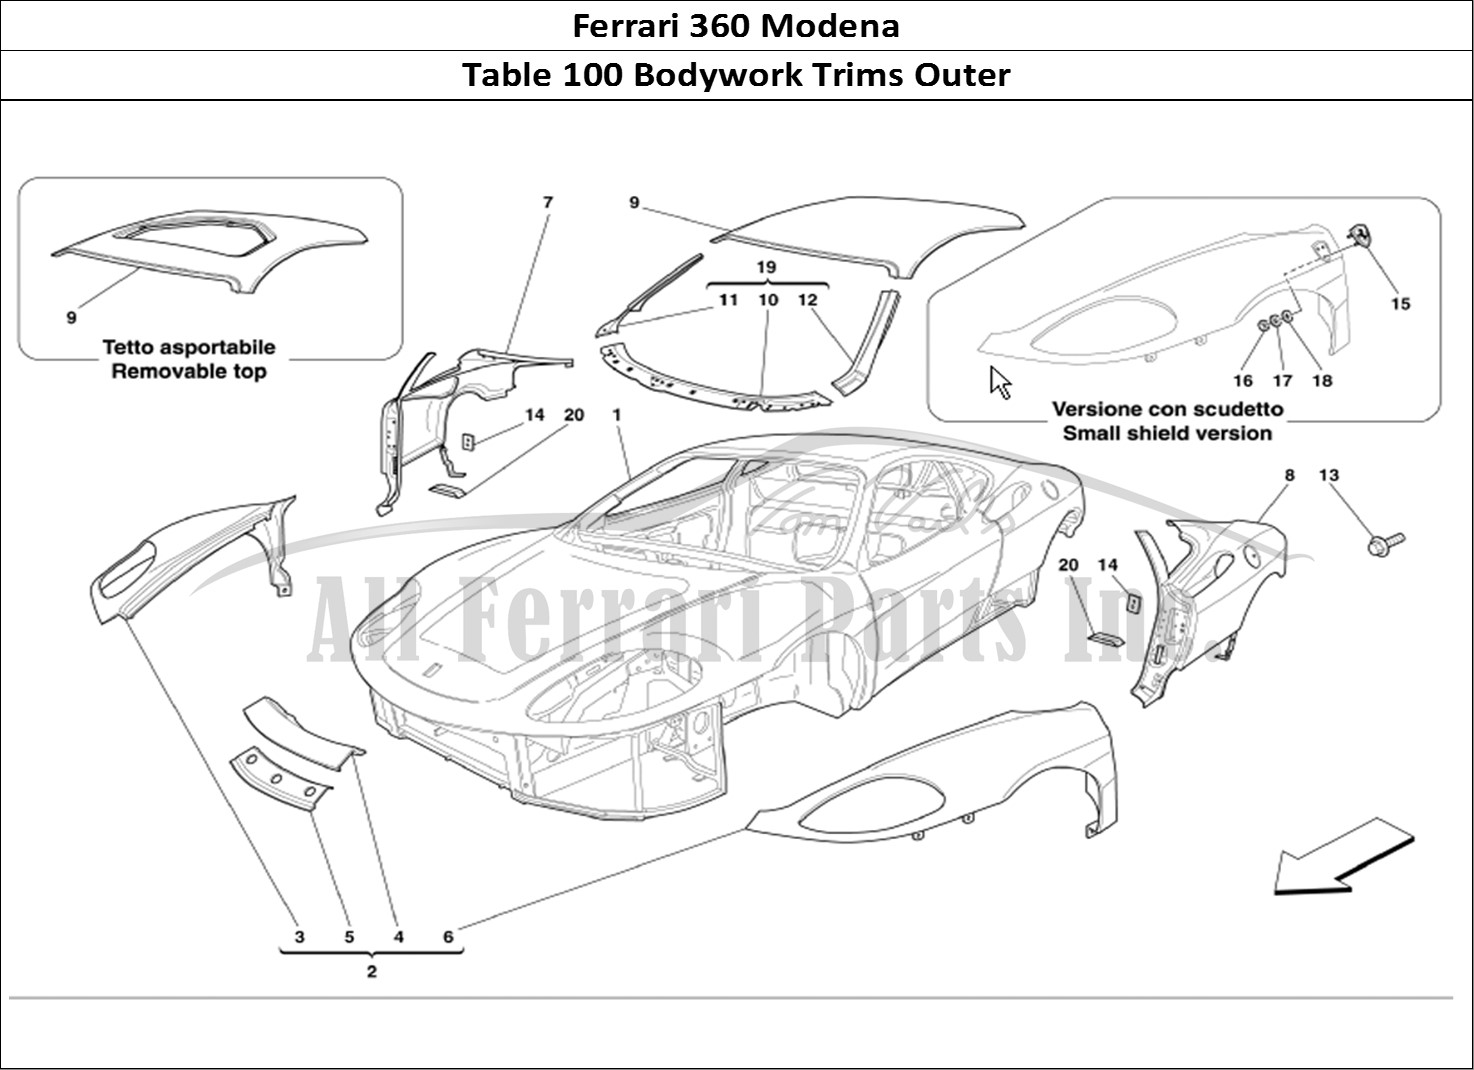 Ferrari Parts Ferrari 360 Modena Page 100 Body Outer Trims